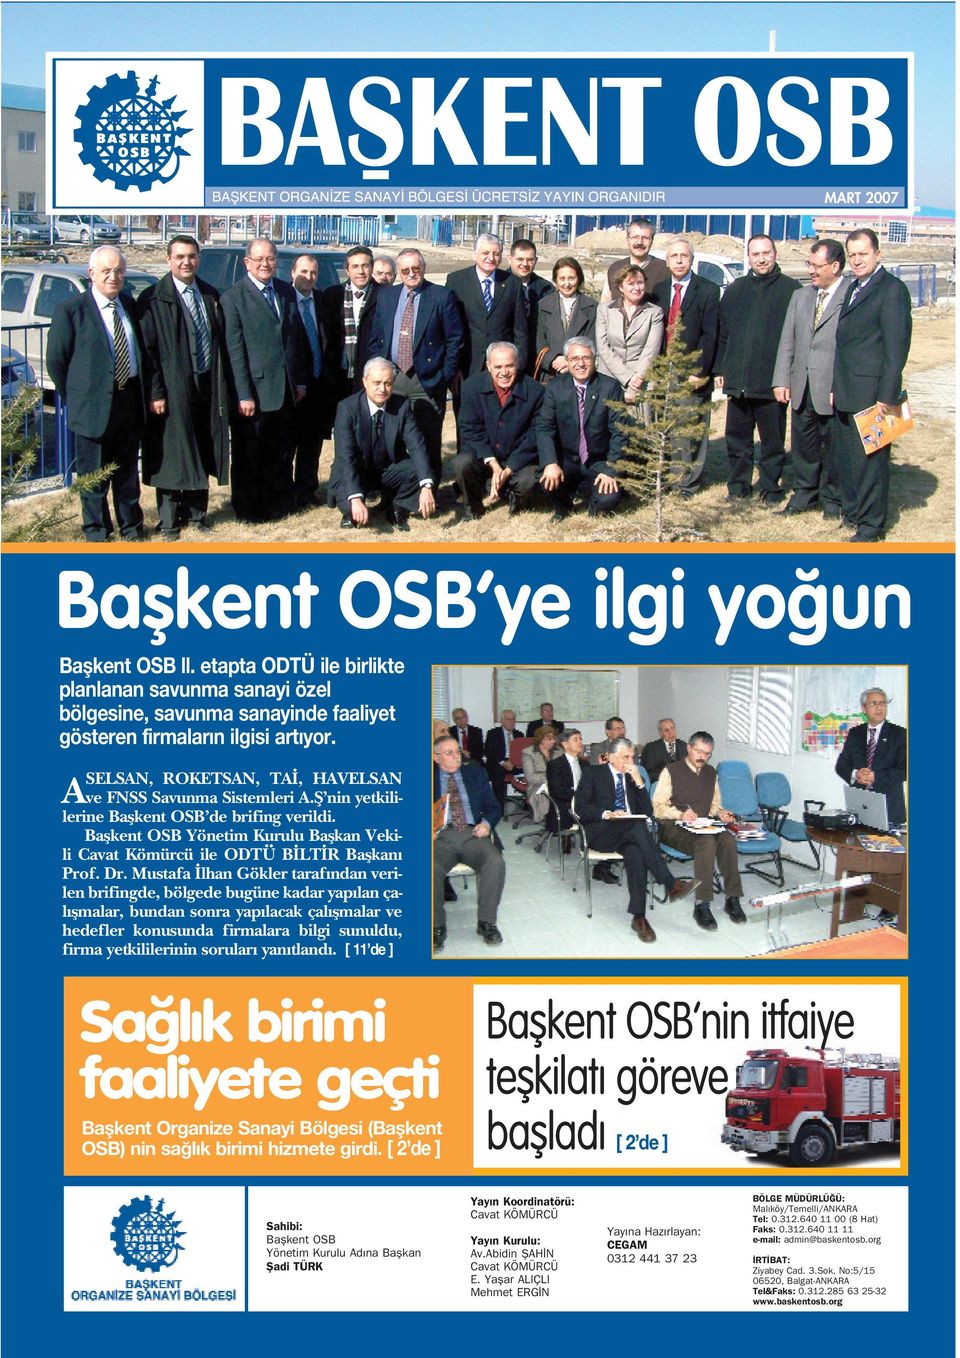 Baflkent OSB Yönetim Kurulu Baflkan Vekili Cavat Kömürcü ile ODTÜ B LT R Baflkan Prof. Dr.